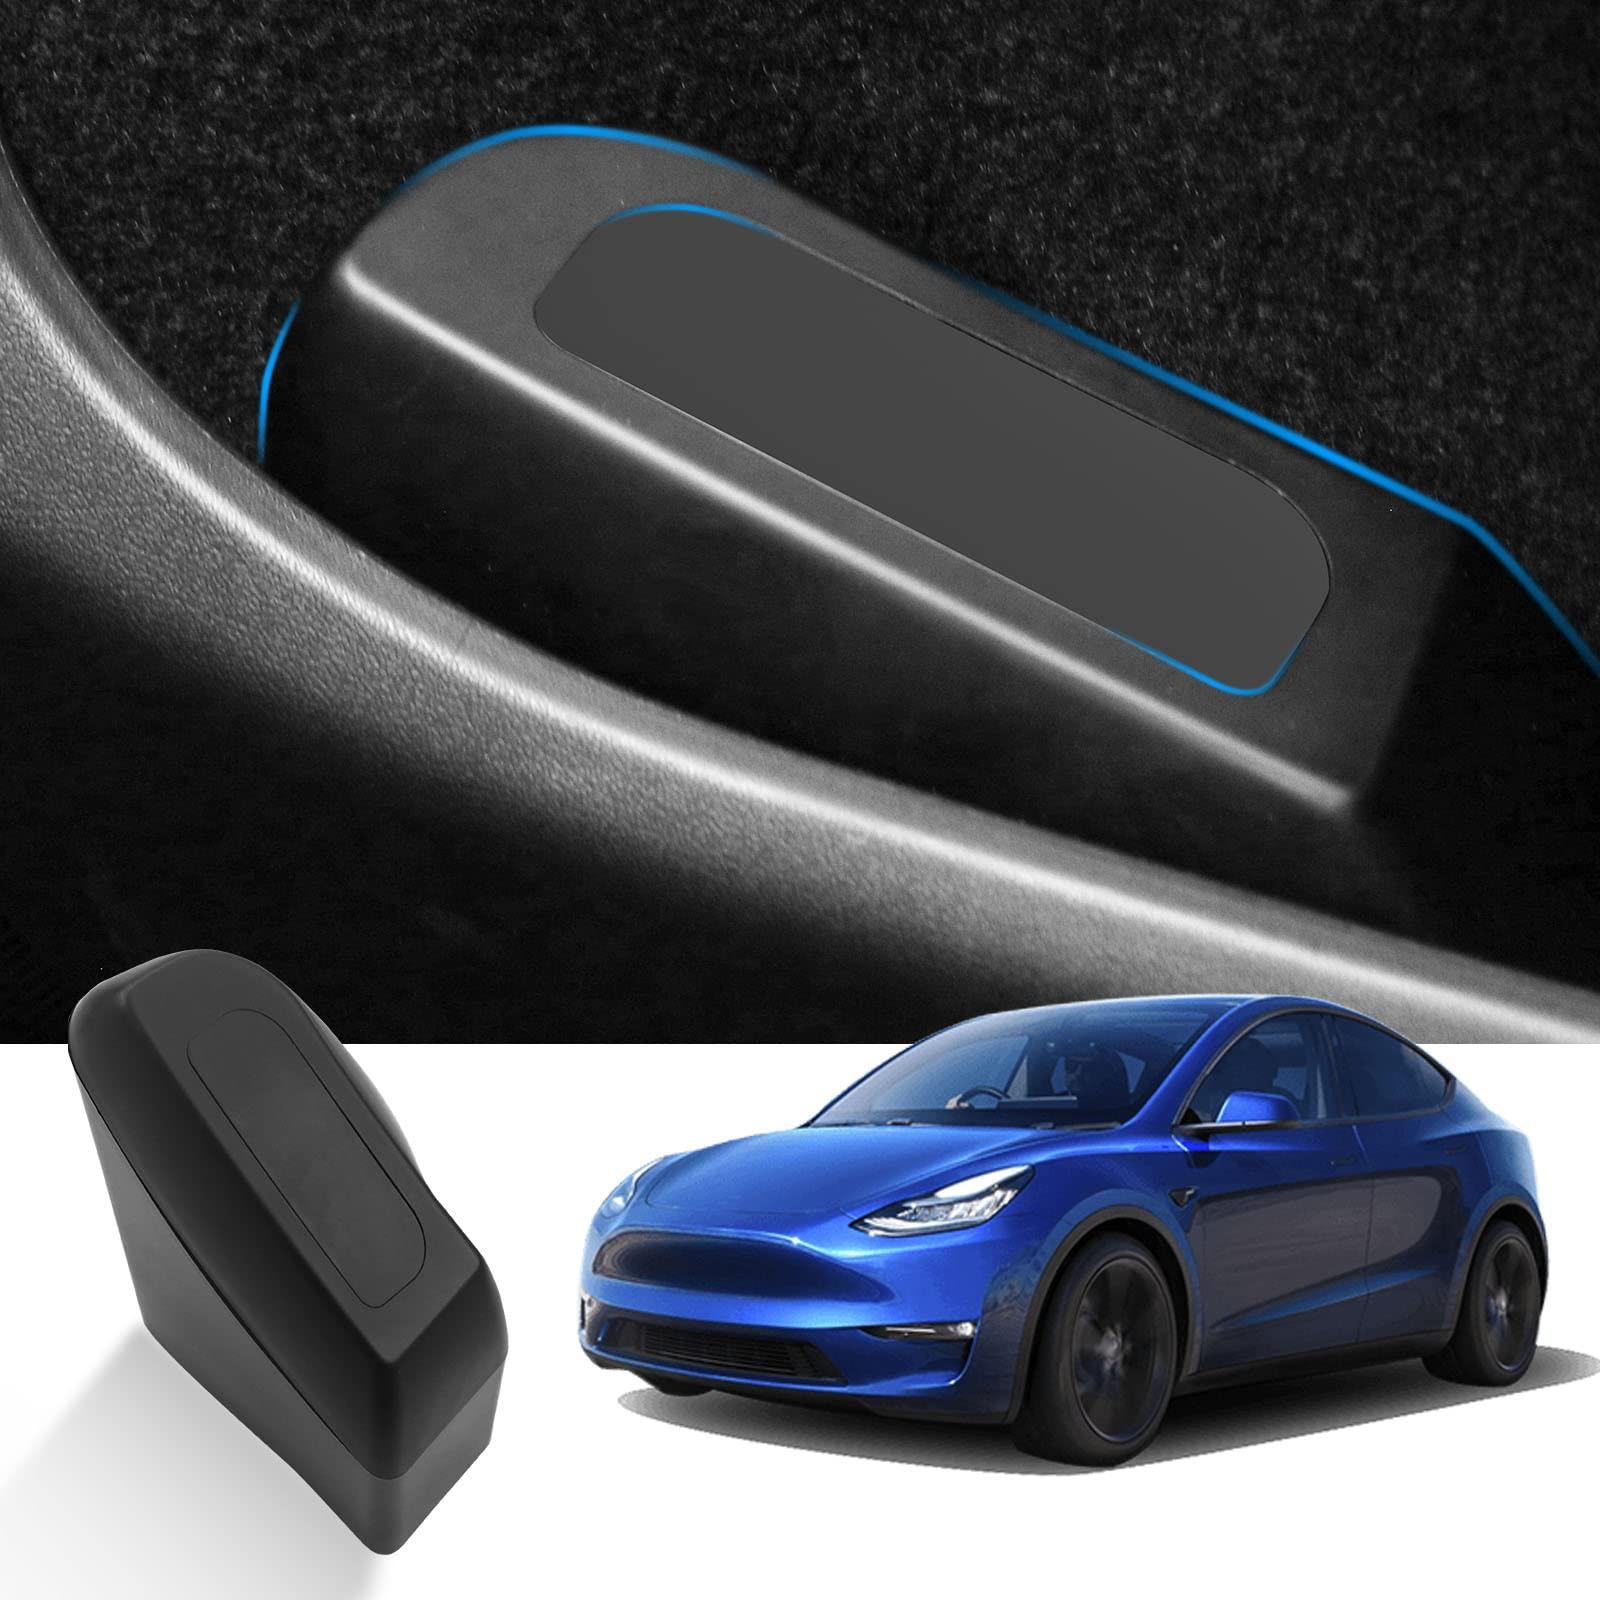 Tesla Model 3 Model Y Car Trash Can 2018+ - LFOTPP Car Accessories